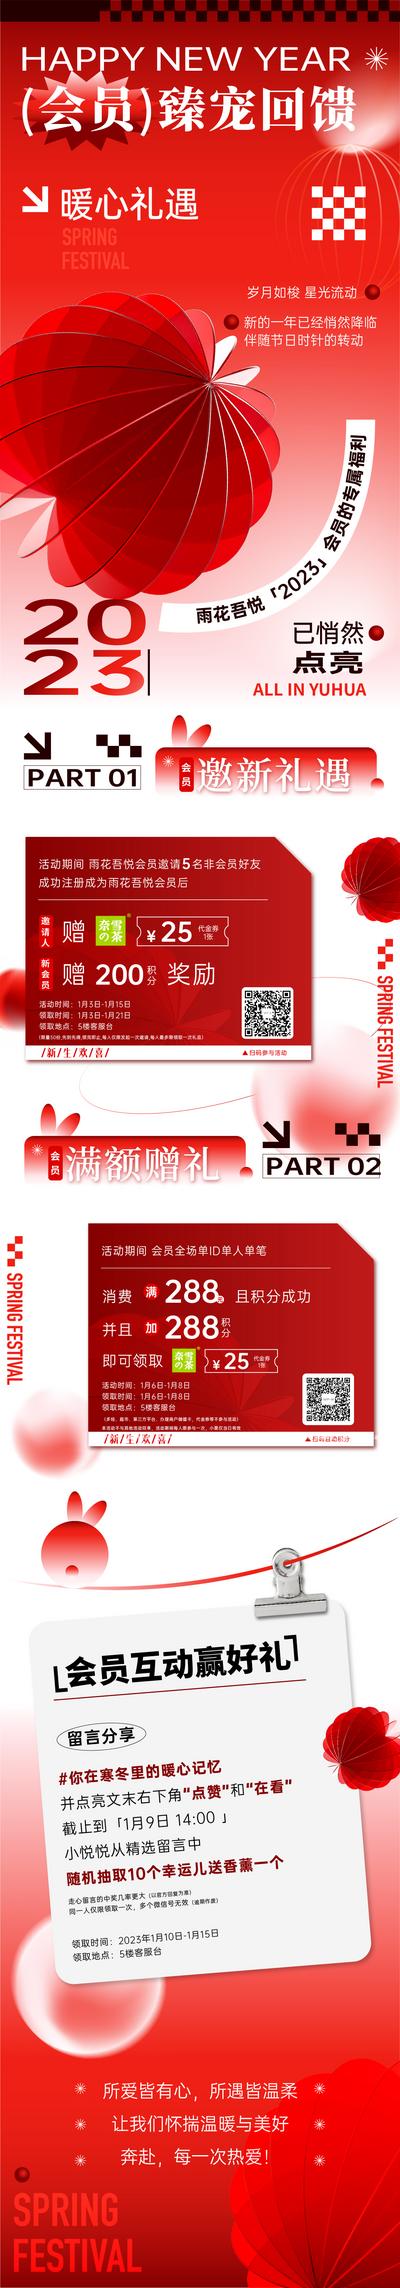 南门网 广告 海报 长图 会员 权益 新年 推文 春节